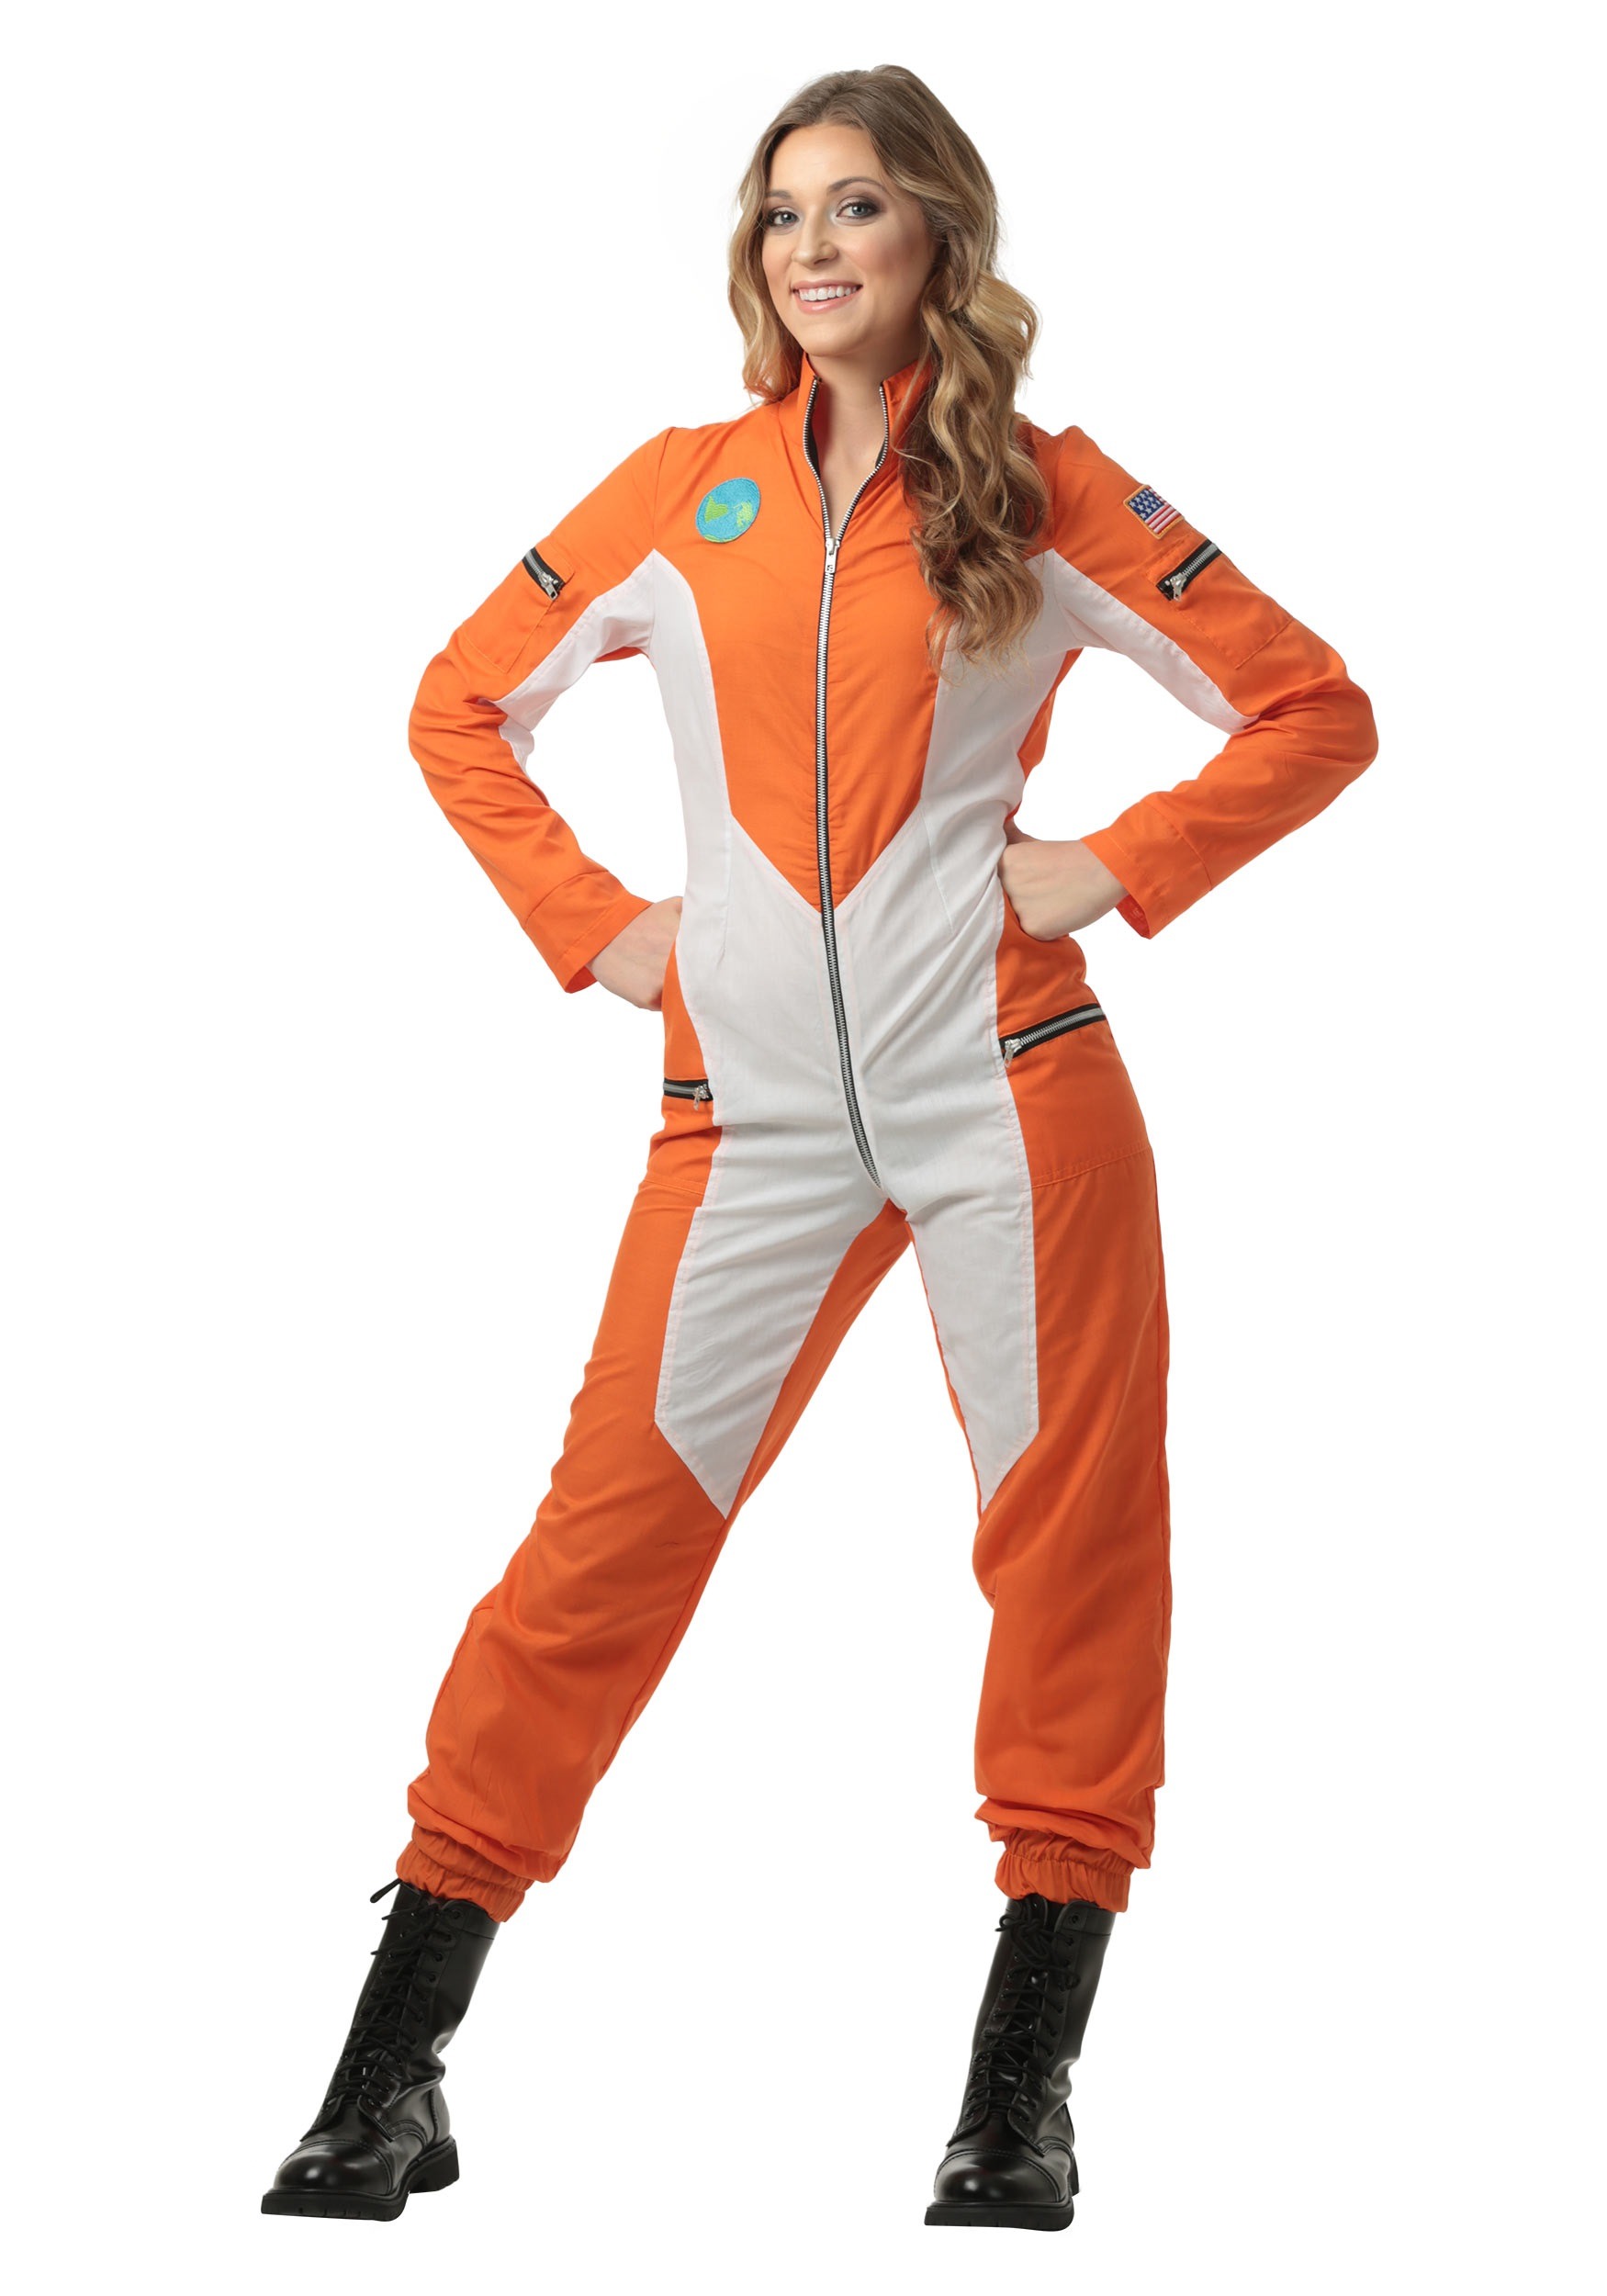 Photos - Fancy Dress FUN Costumes Women's Plus Size Astronaut Jumpsuit Costume Orange/White